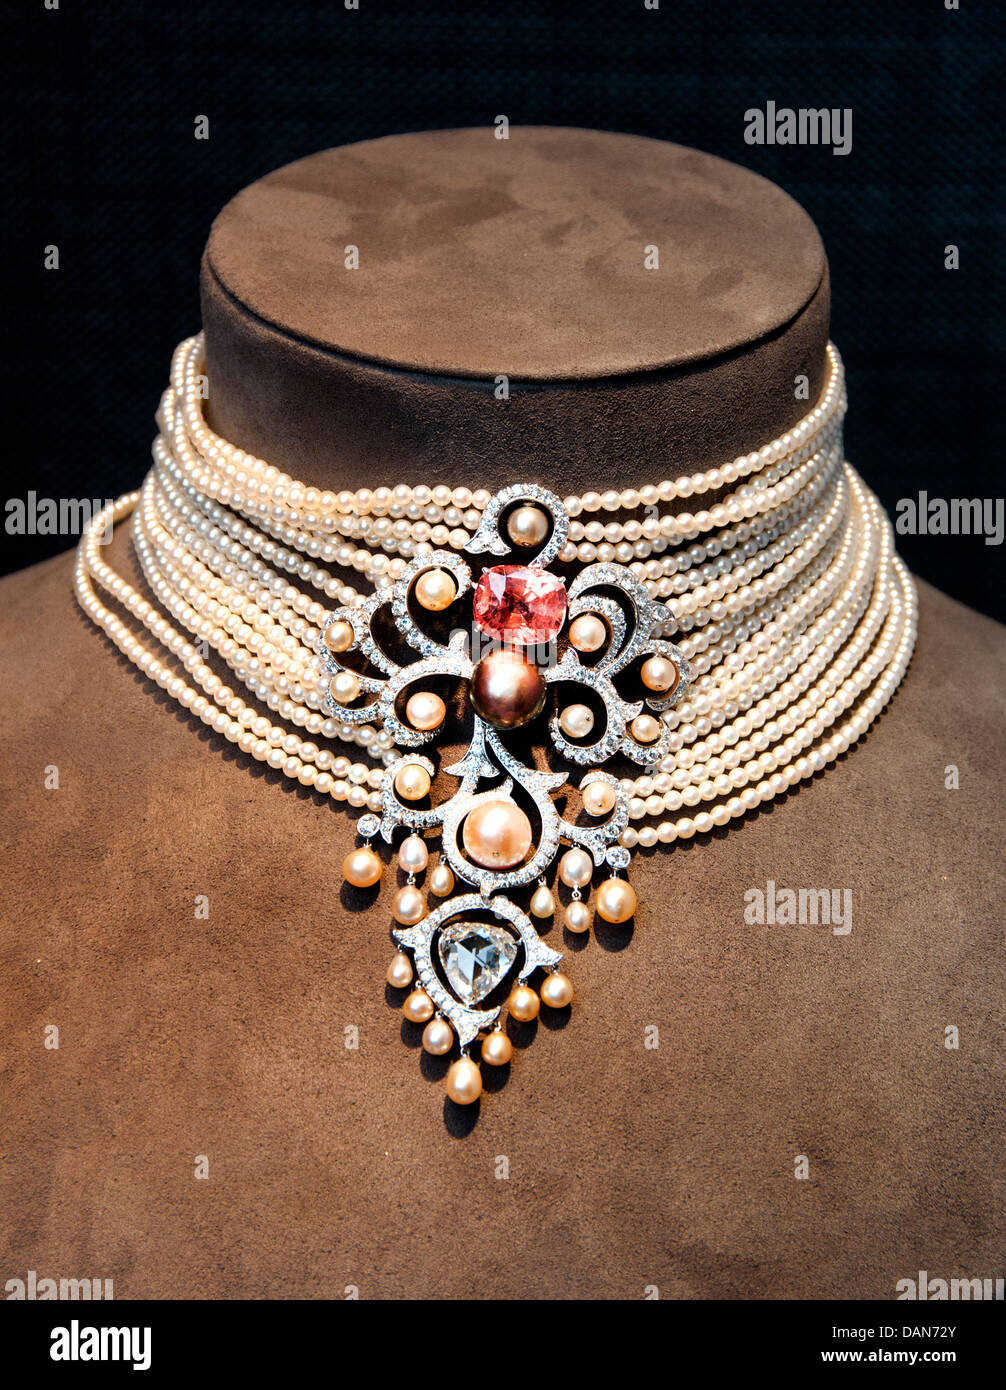 Diamond Necklace Pearls Cartier Jewelry Monaco French Riviera Jewelry Stock Photo